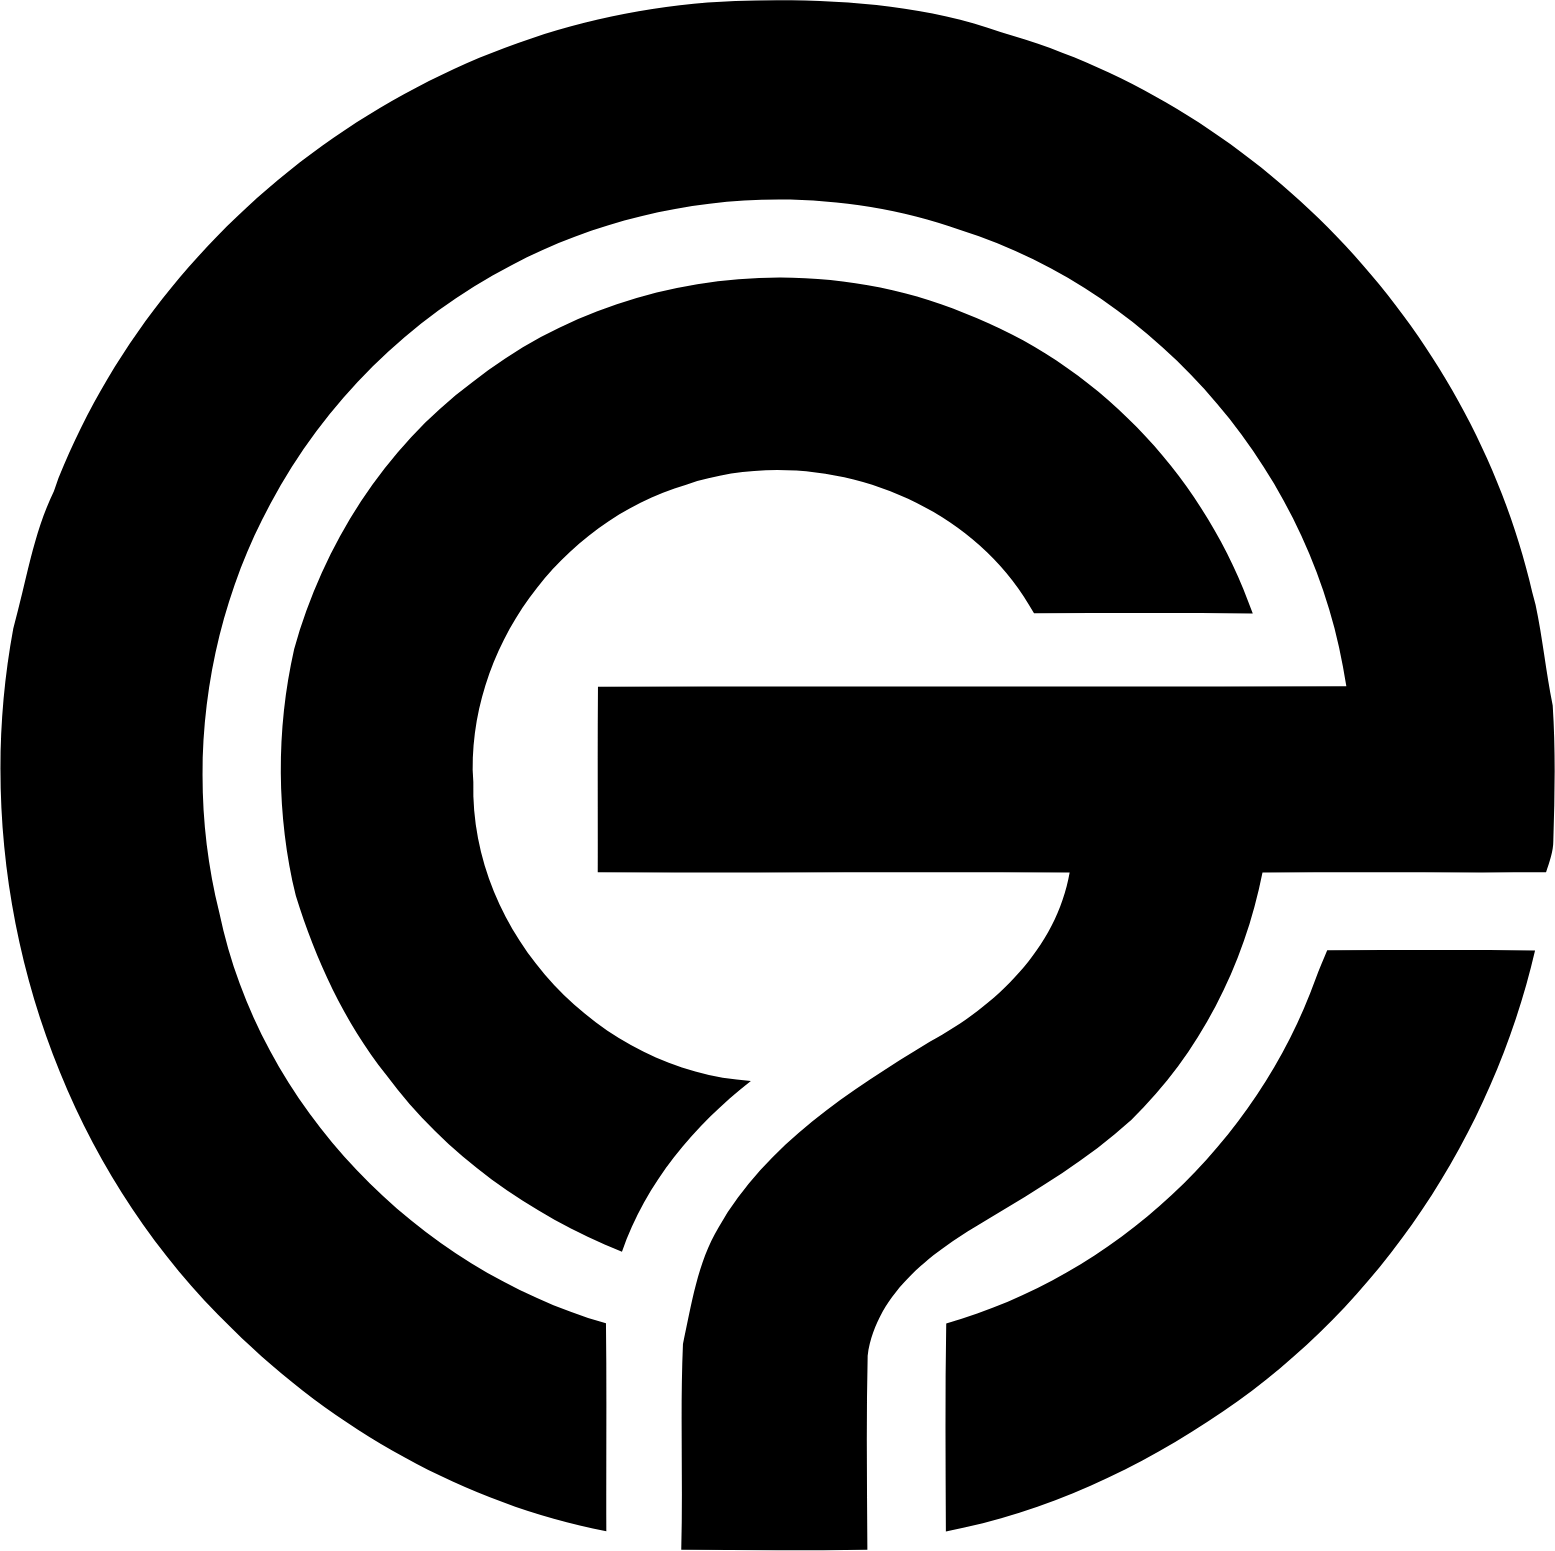 Enad Global 7 logo (transparent PNG)